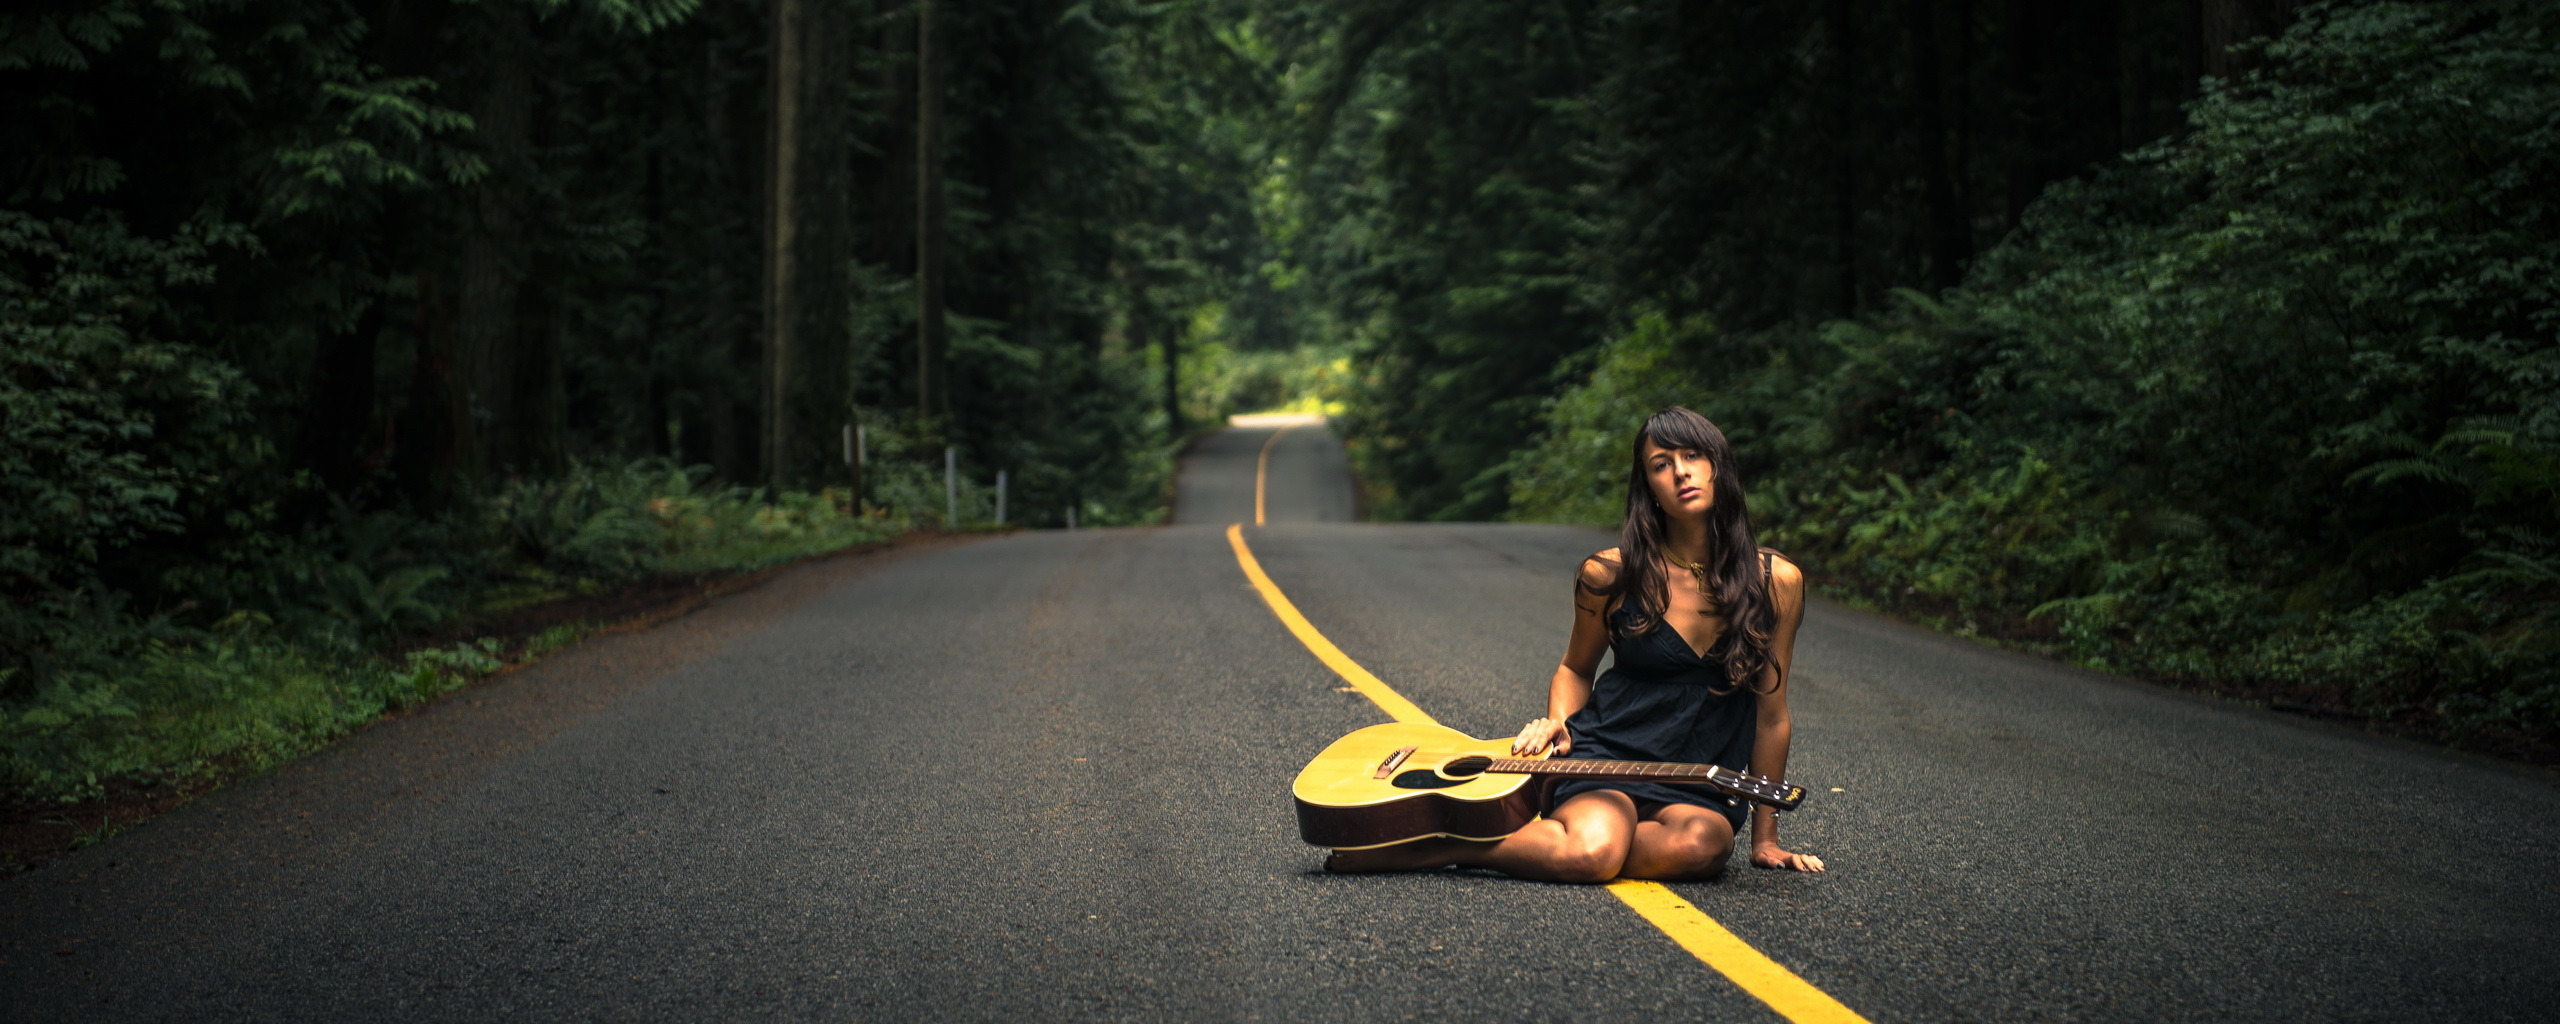 Музыка для дороги в машине. Девушка на дороге. Музыкальная дорога. Девушка с гитарой на дороге. Макет девушки на дороге.